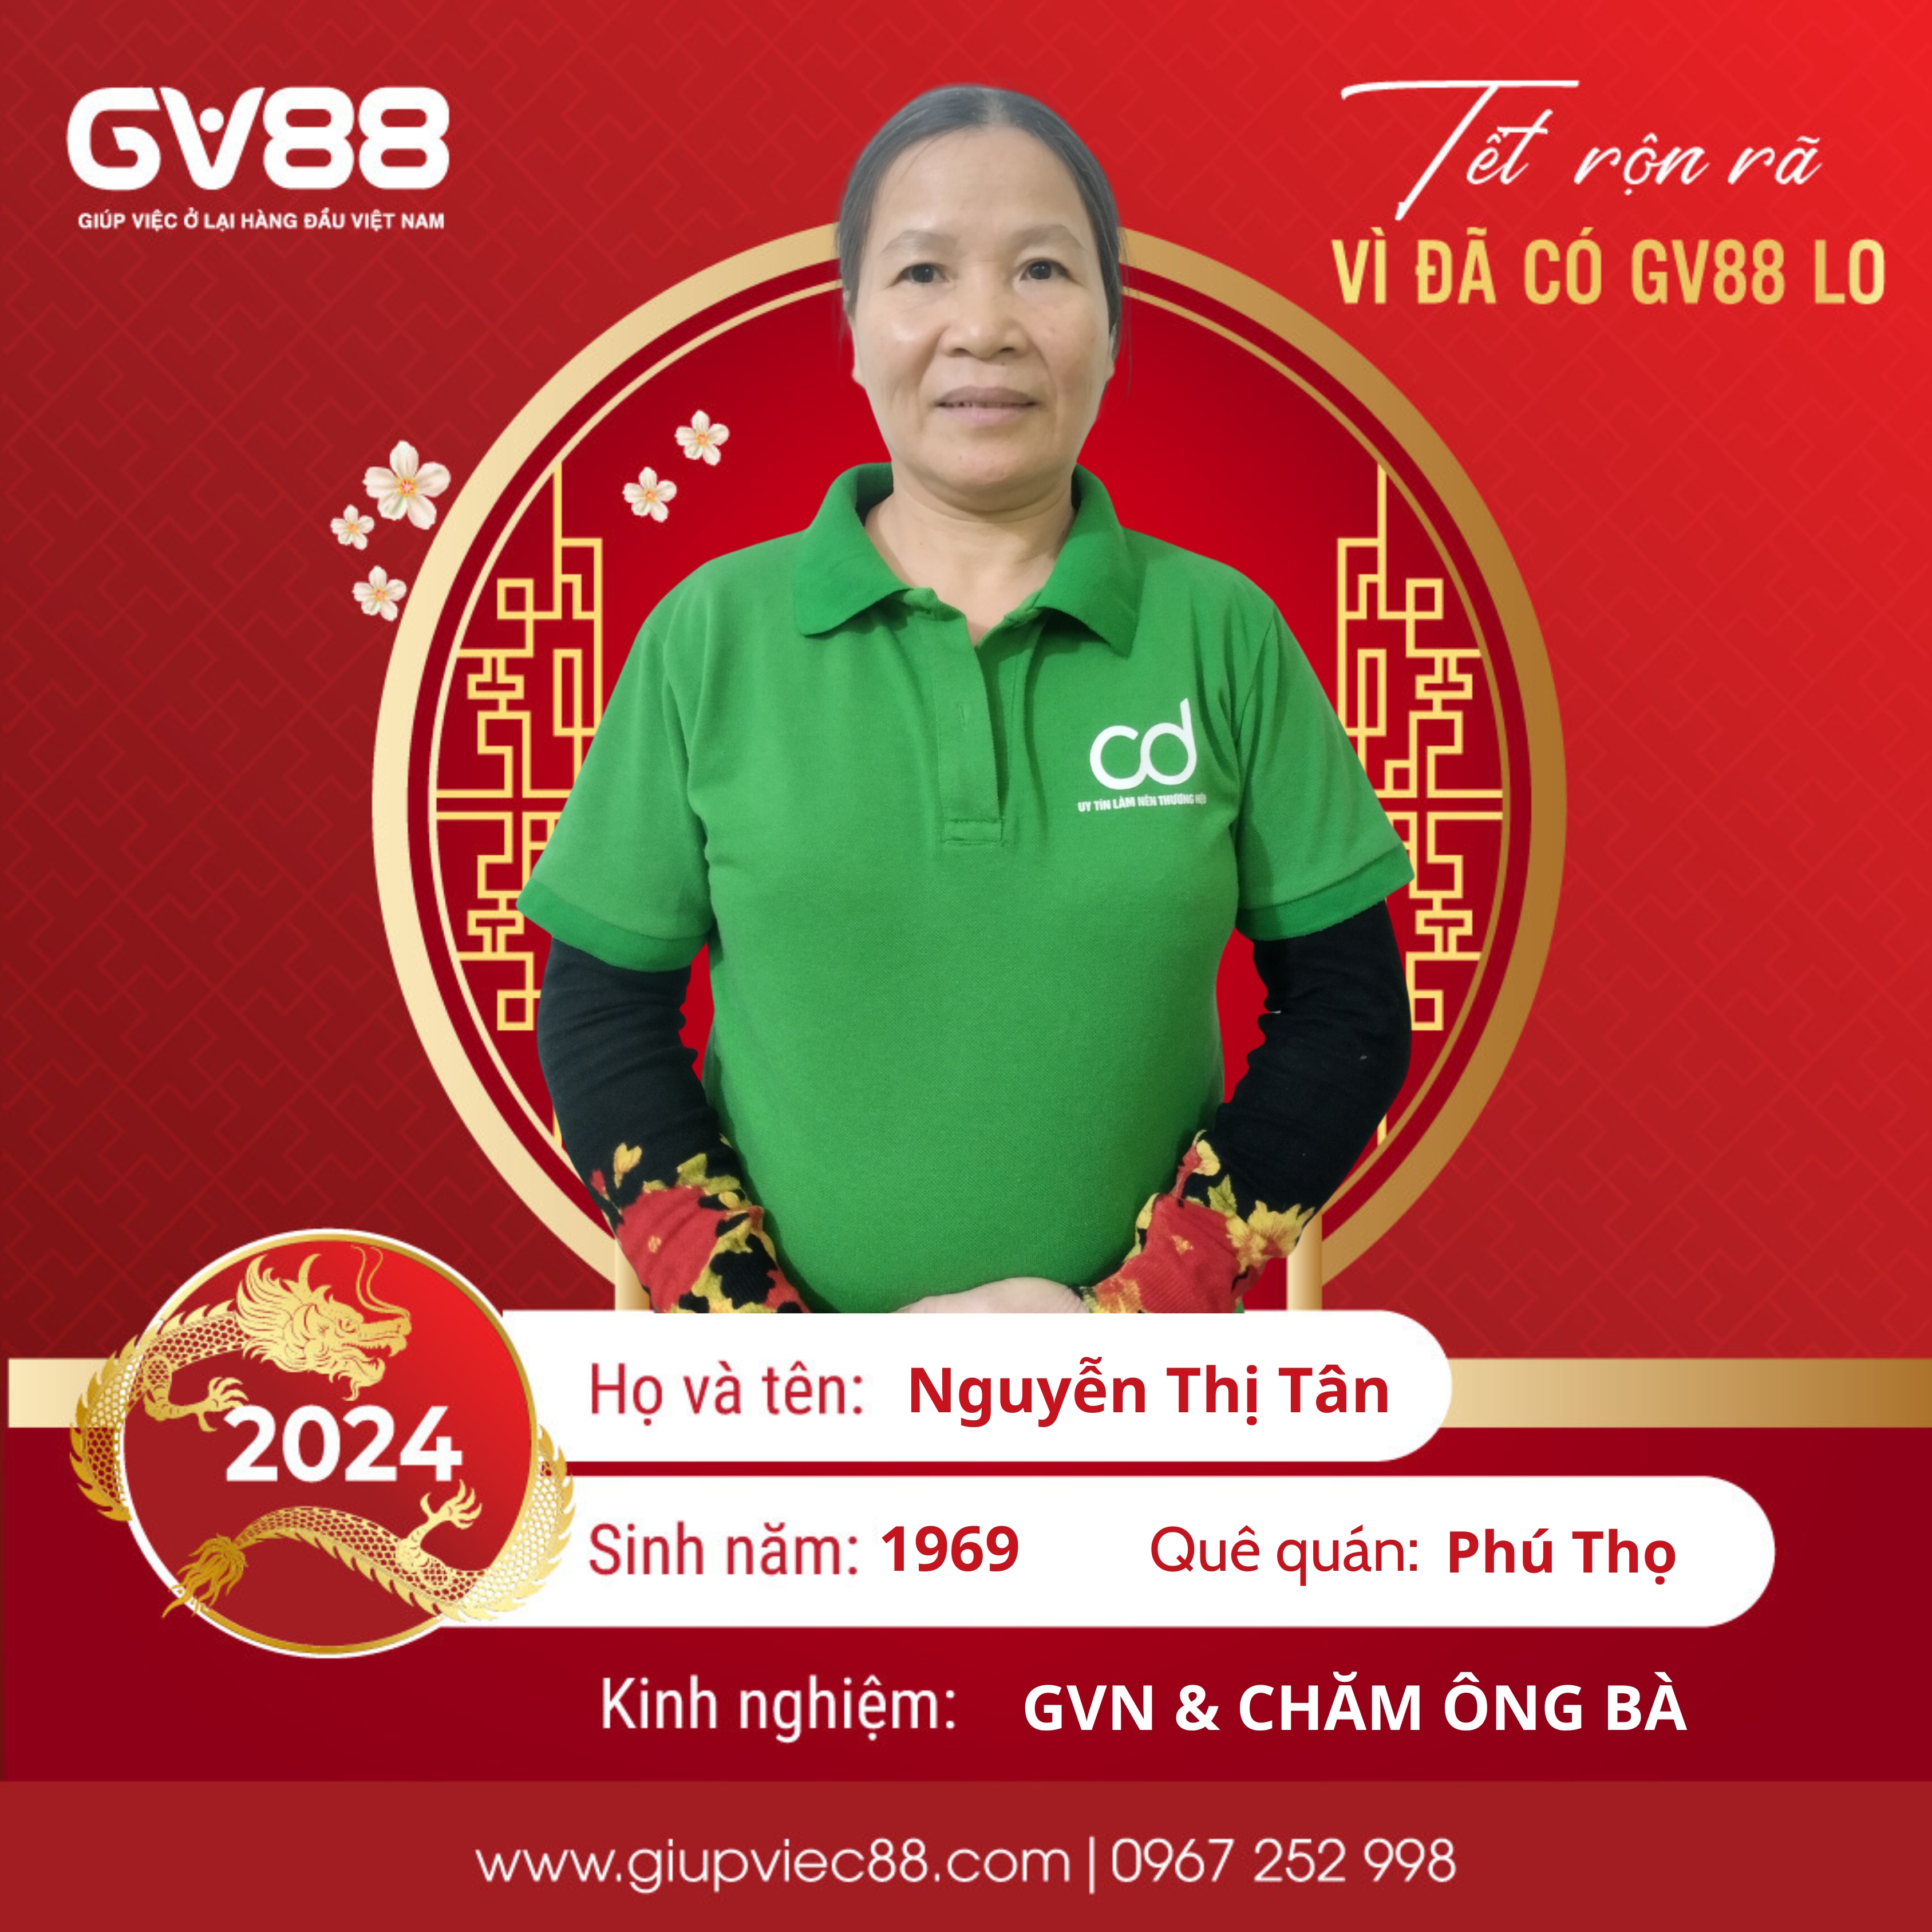 Nguyễn Thị Tân